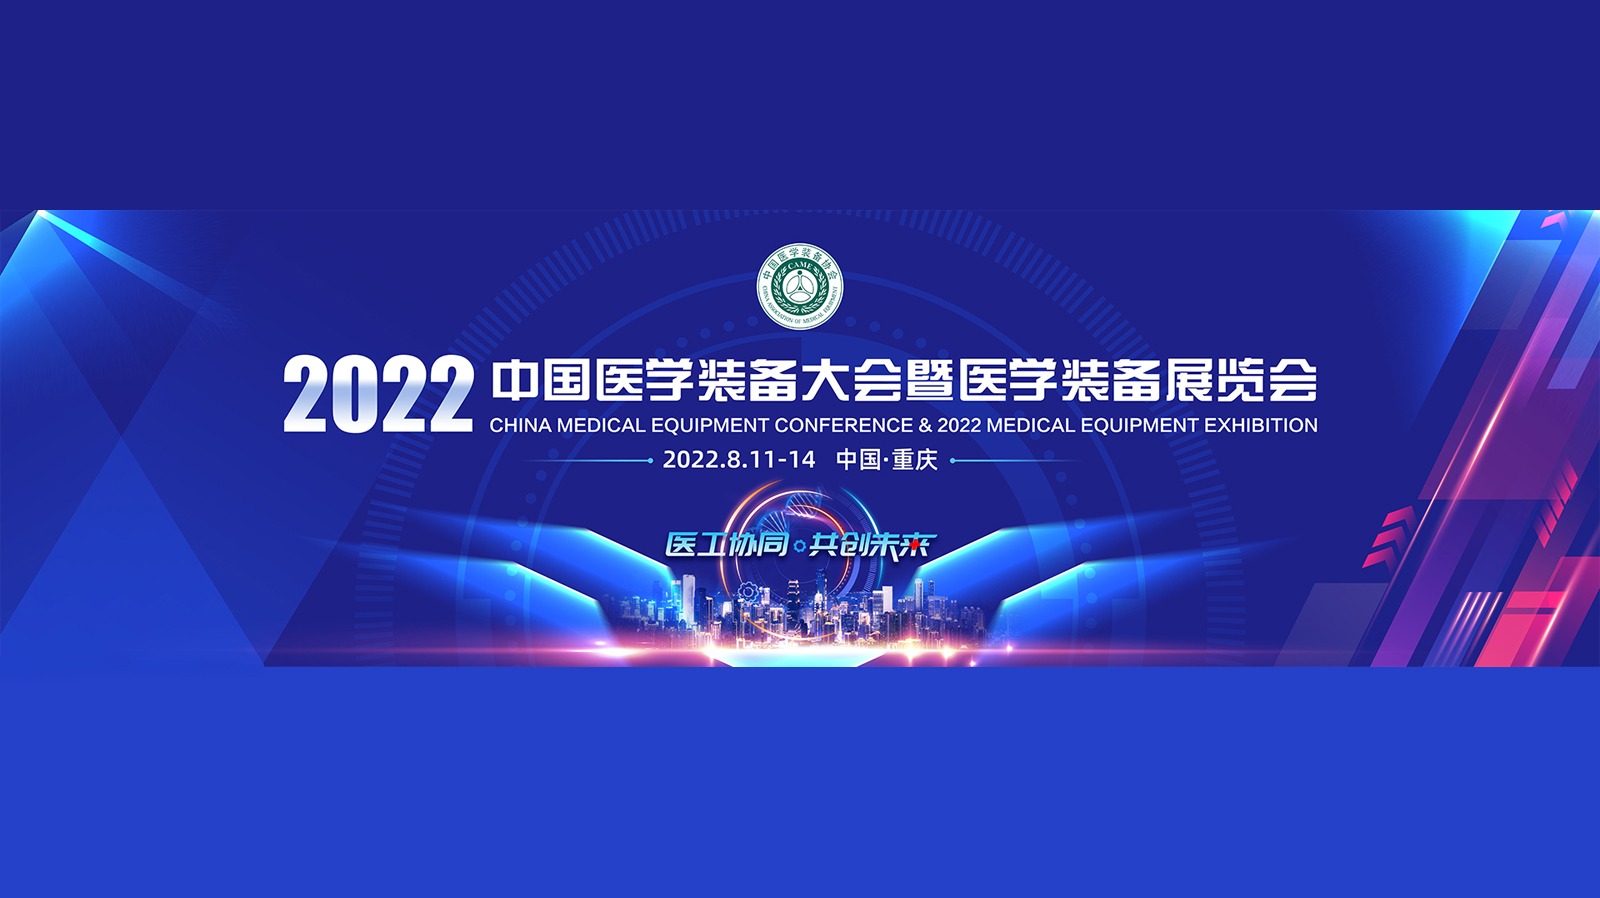 2022中国医学装备大会暨医学装备展览会